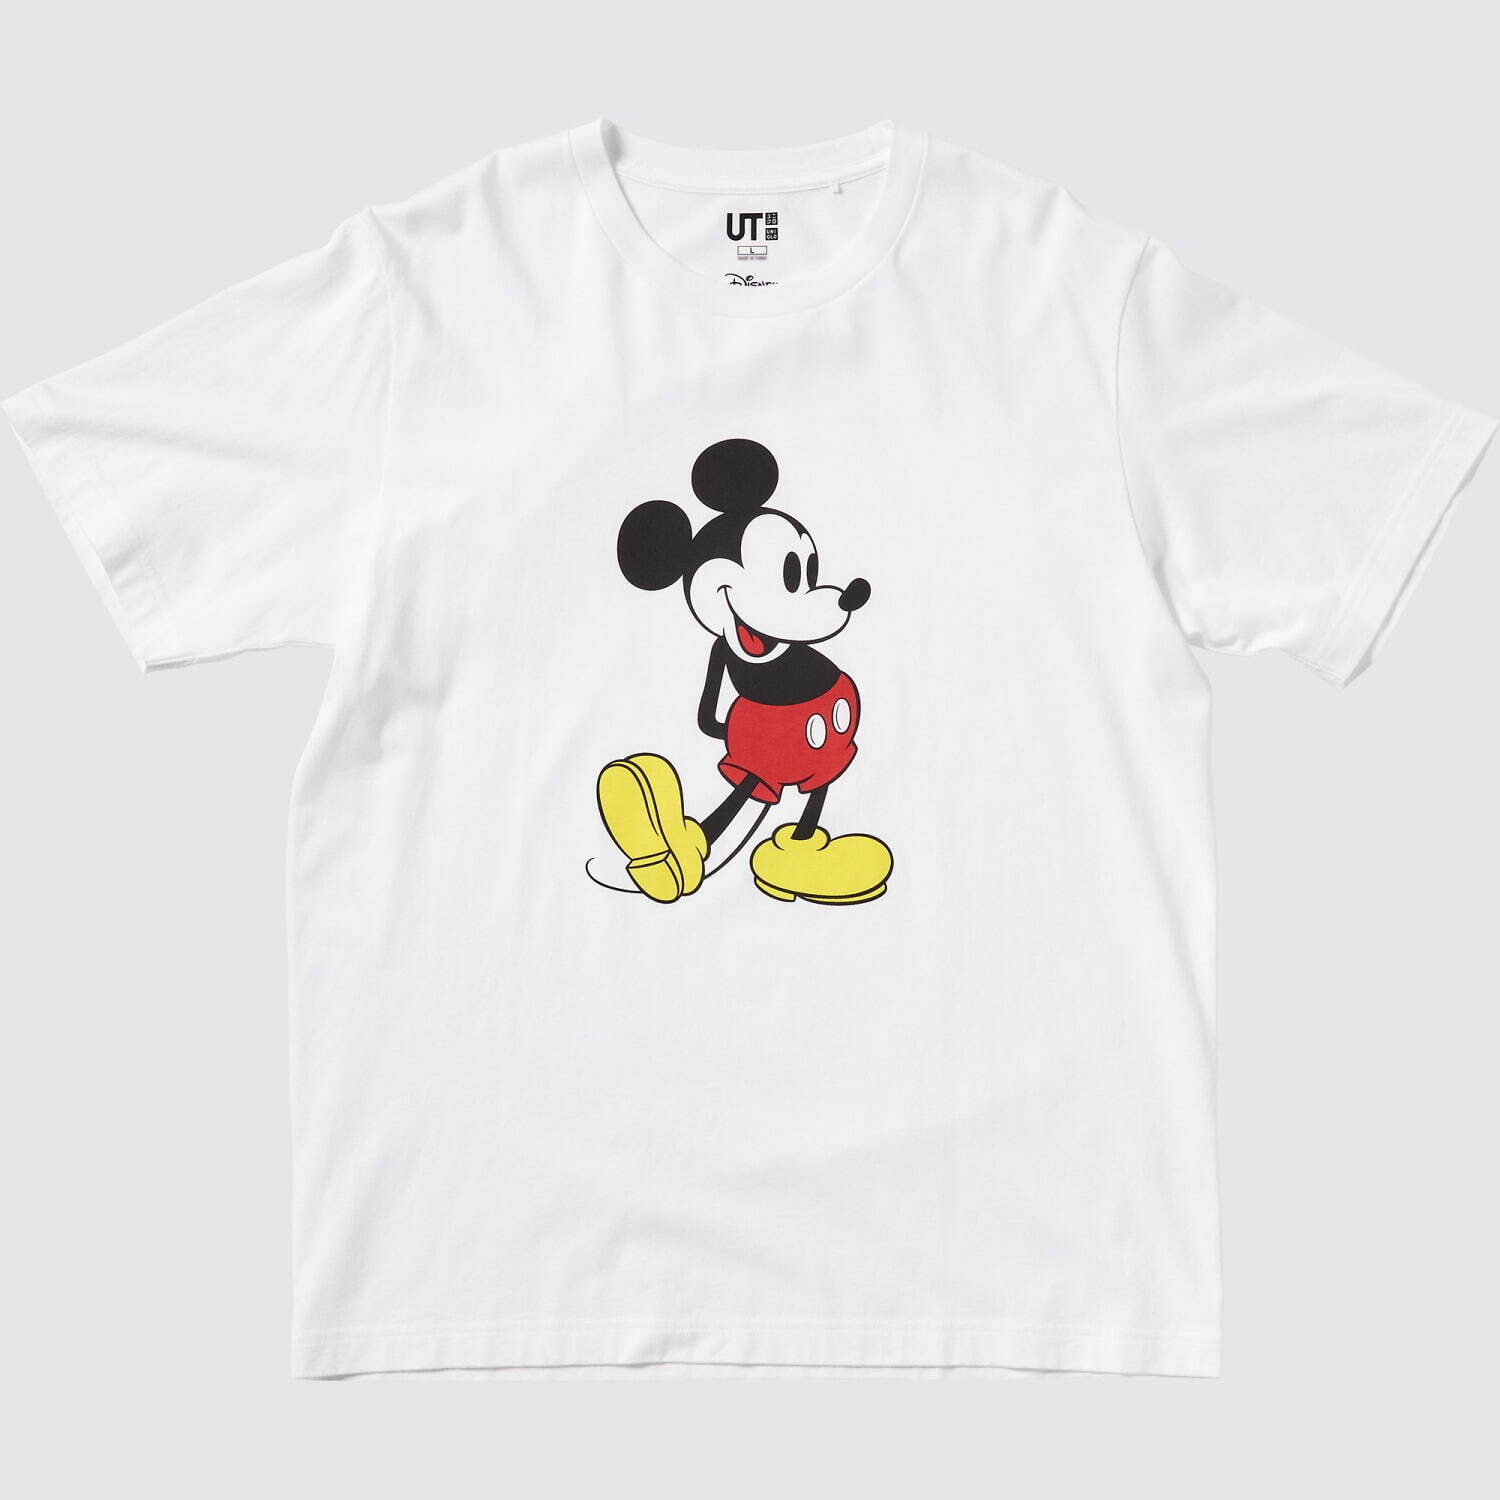 ユニクロ「UT」ディズニー“ミッキーマウス”Tシャツ、“スタンディングポーズ”を描く全24柄 - ファッションプレス